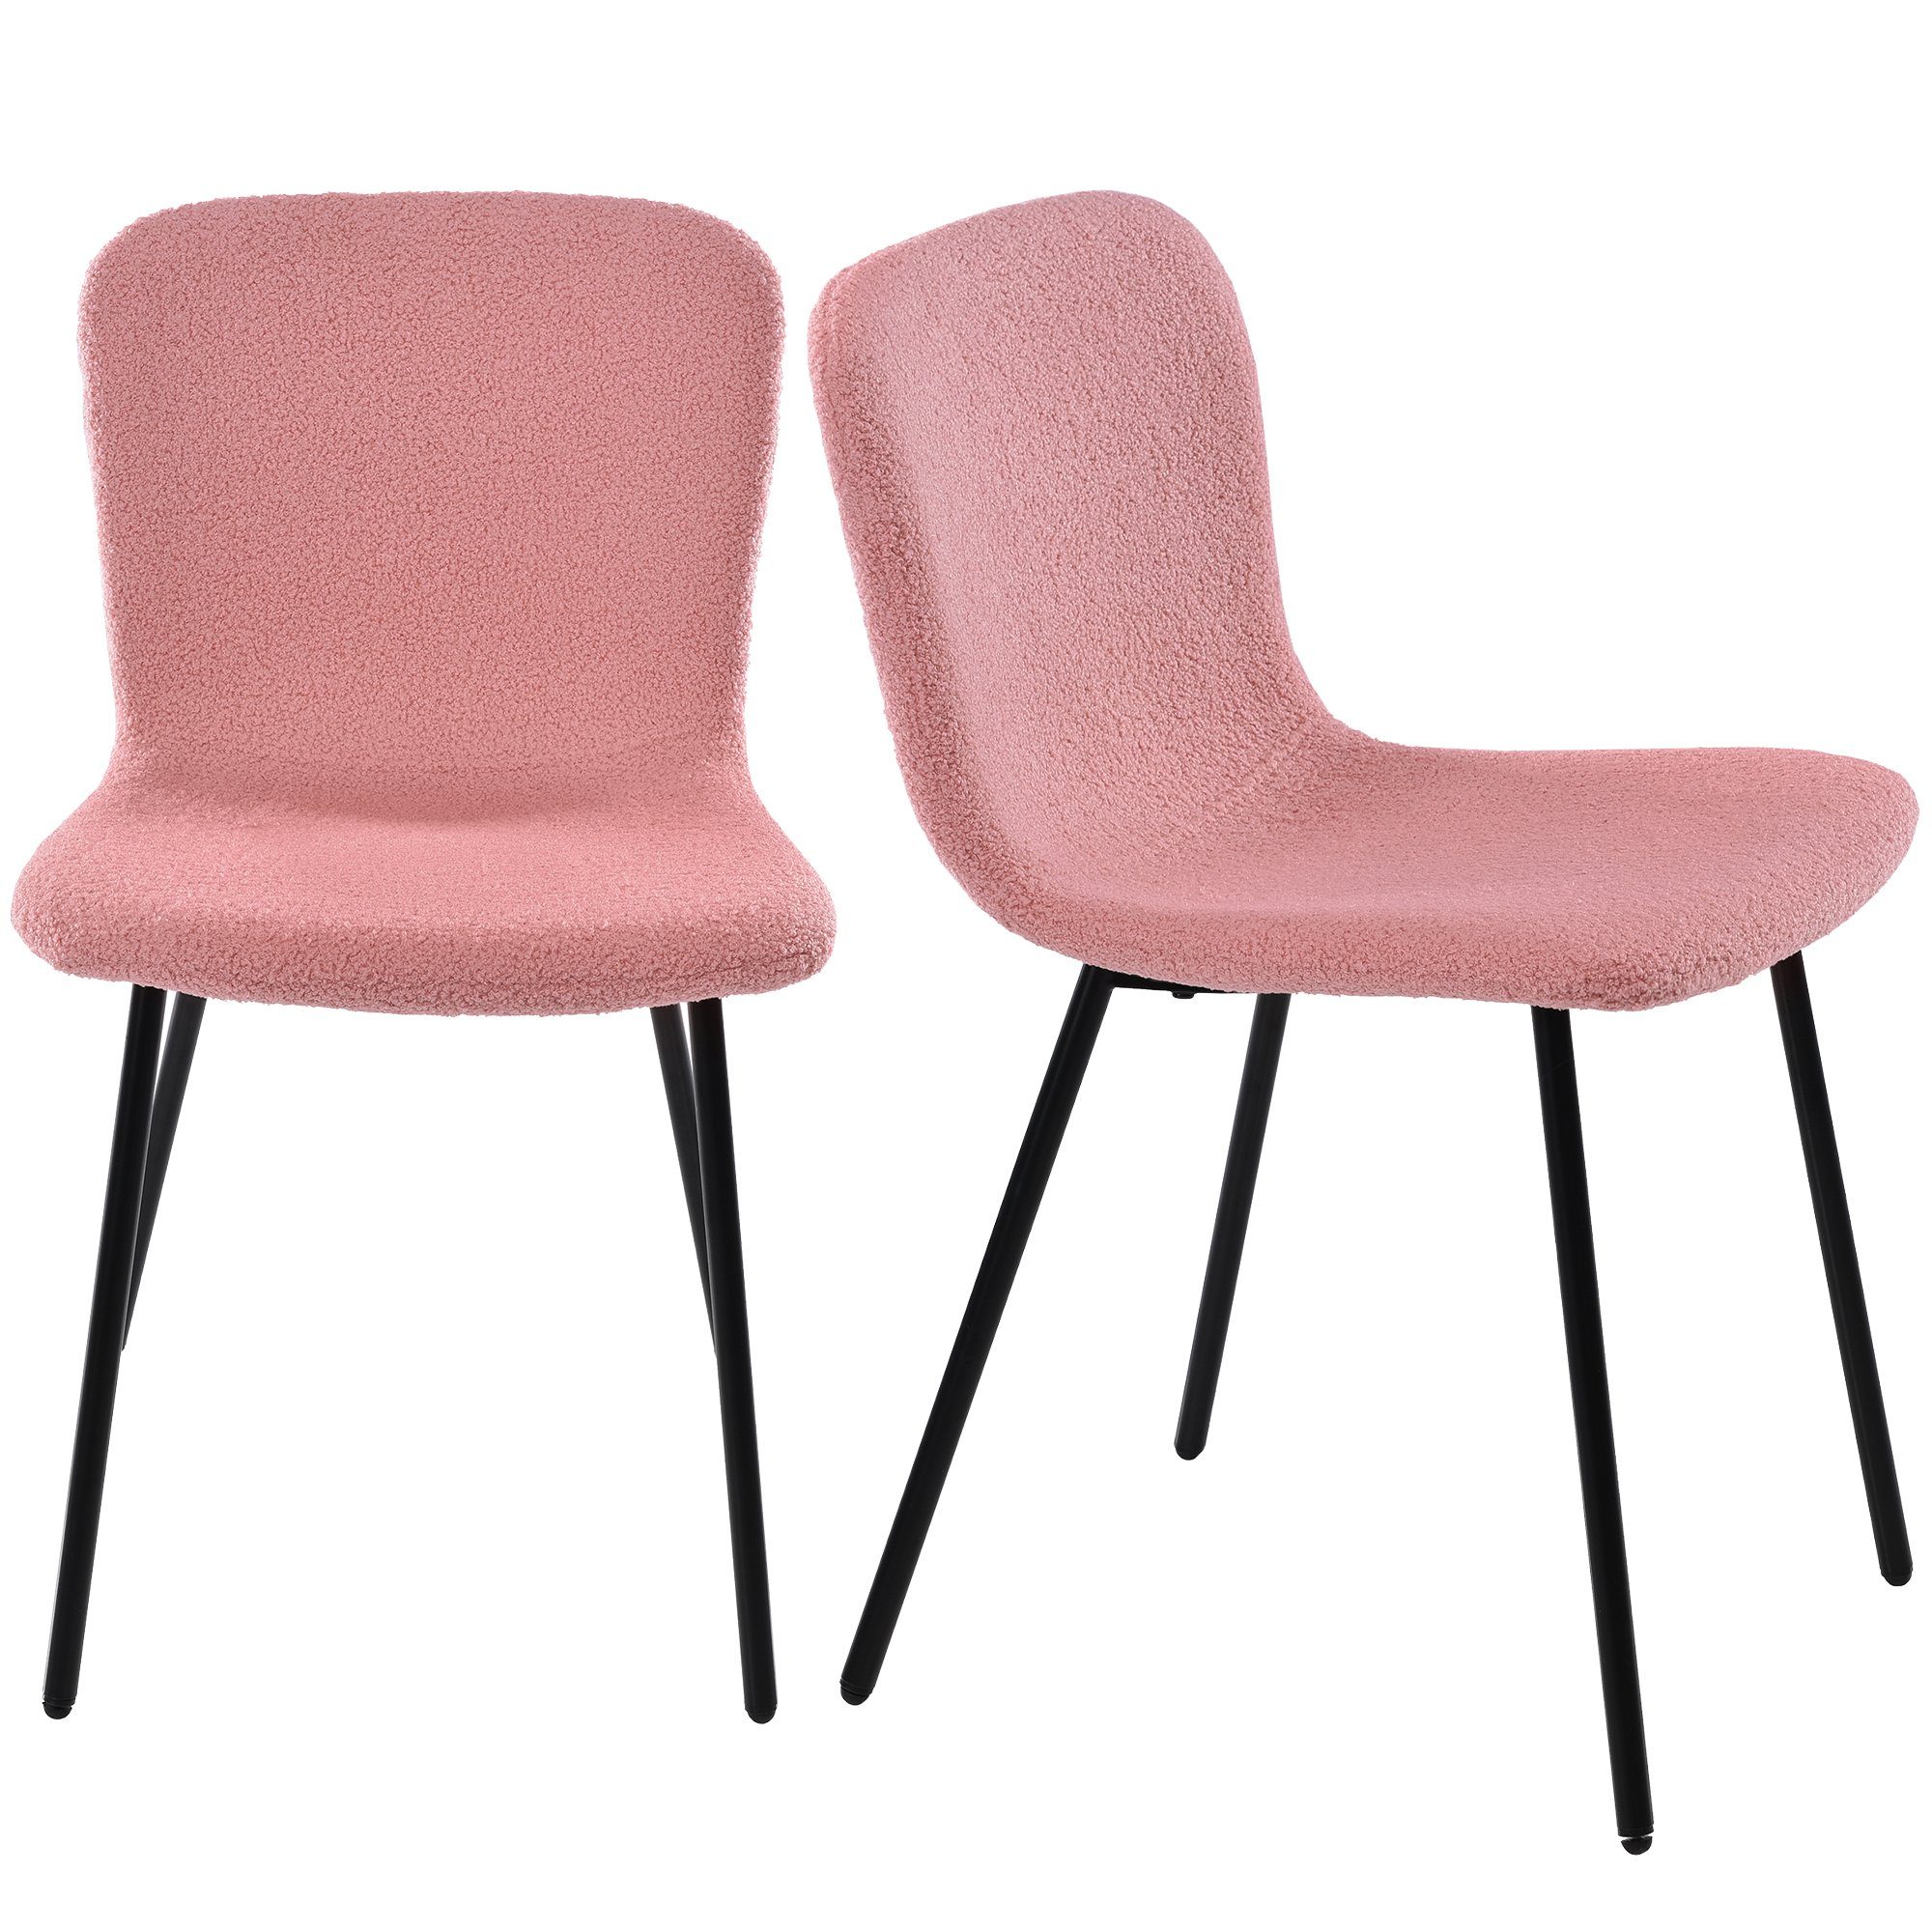 Sweiko Esszimmerstuhl (4er Set Polsterstuhl mit Sitz und Rücken gepolstert, 4 St), mit Rückenlehne, Sitzfläche aus Lamm Samt, Gestell aus Metall Rosa | Rosa